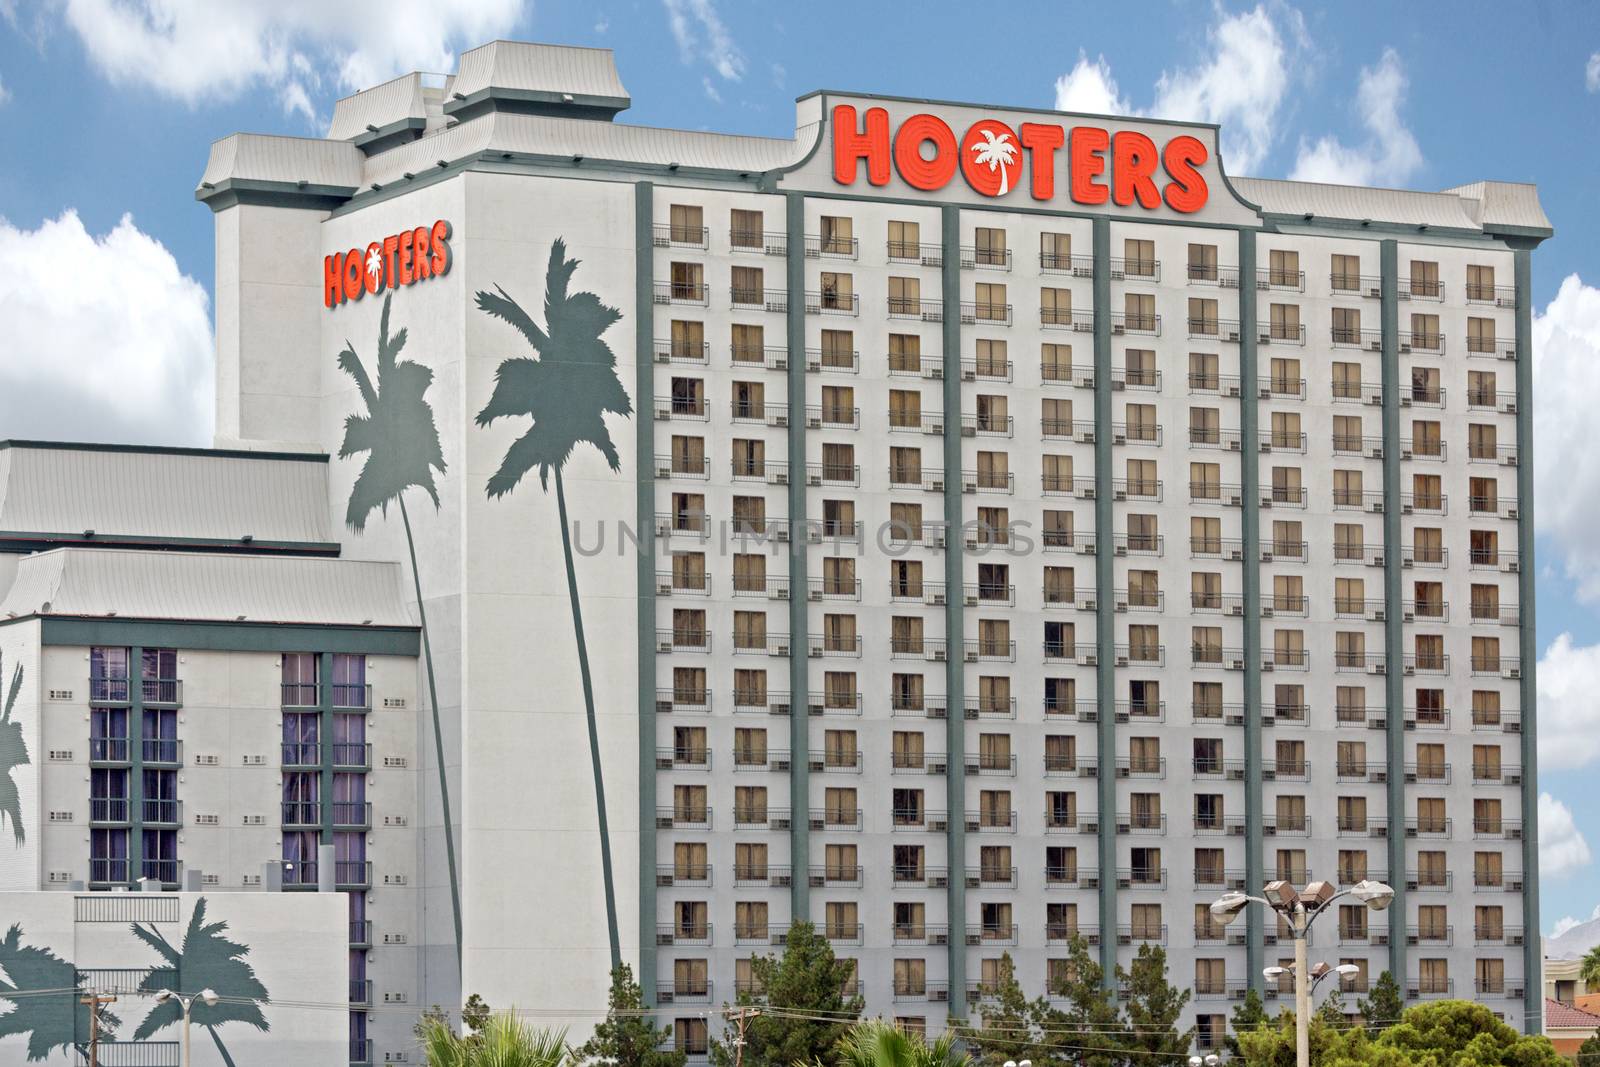 Hooters Casino Hotel in Las Vegas by Roka